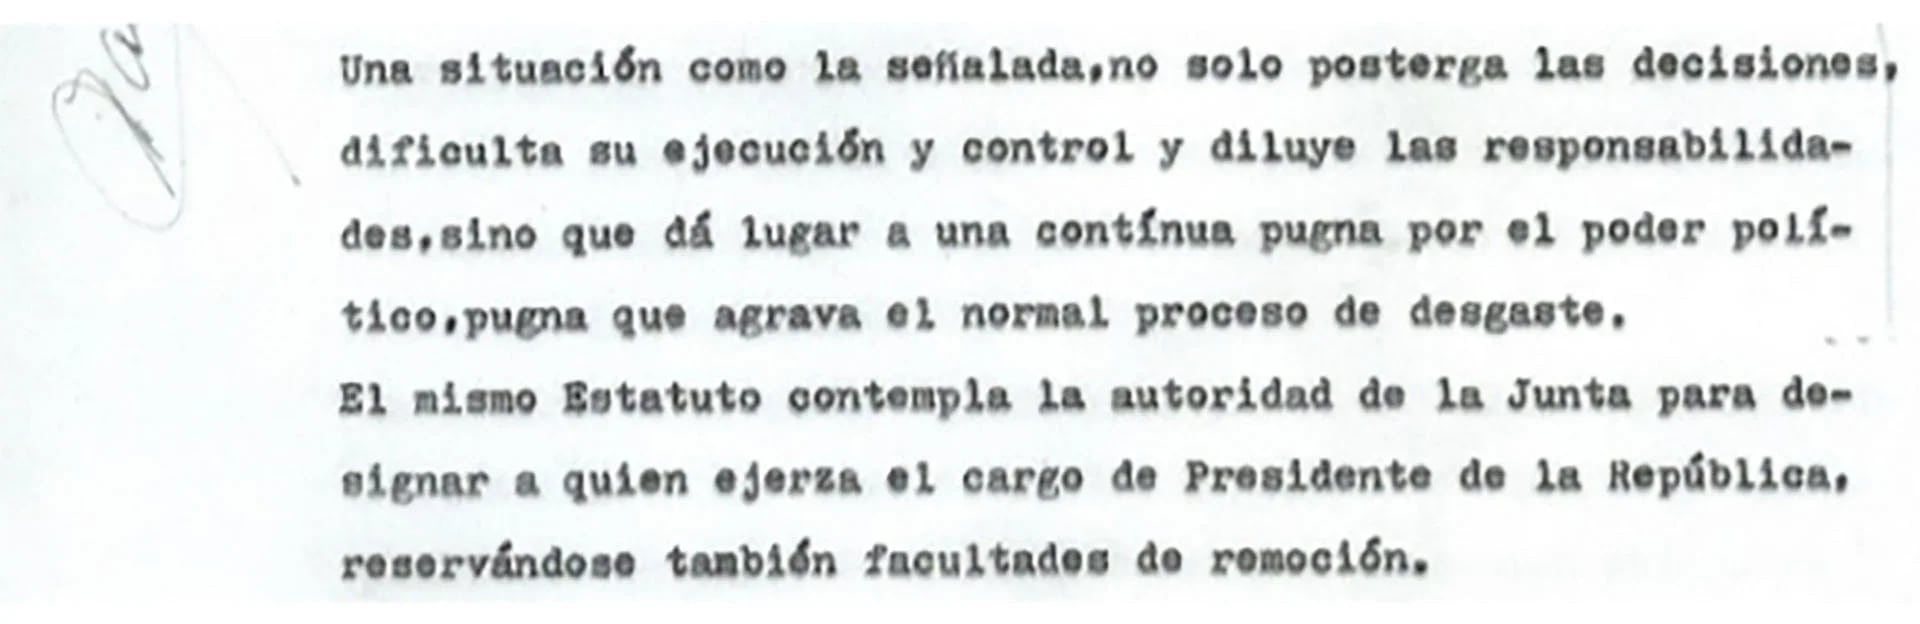 El trabajo de Carcagno a Videla comenzó tratando críticamente la estructura de poder elaborada por los jefes del Proceso de Reorganización Nacional en la que cada fuerza disponía de un tercio del poder político